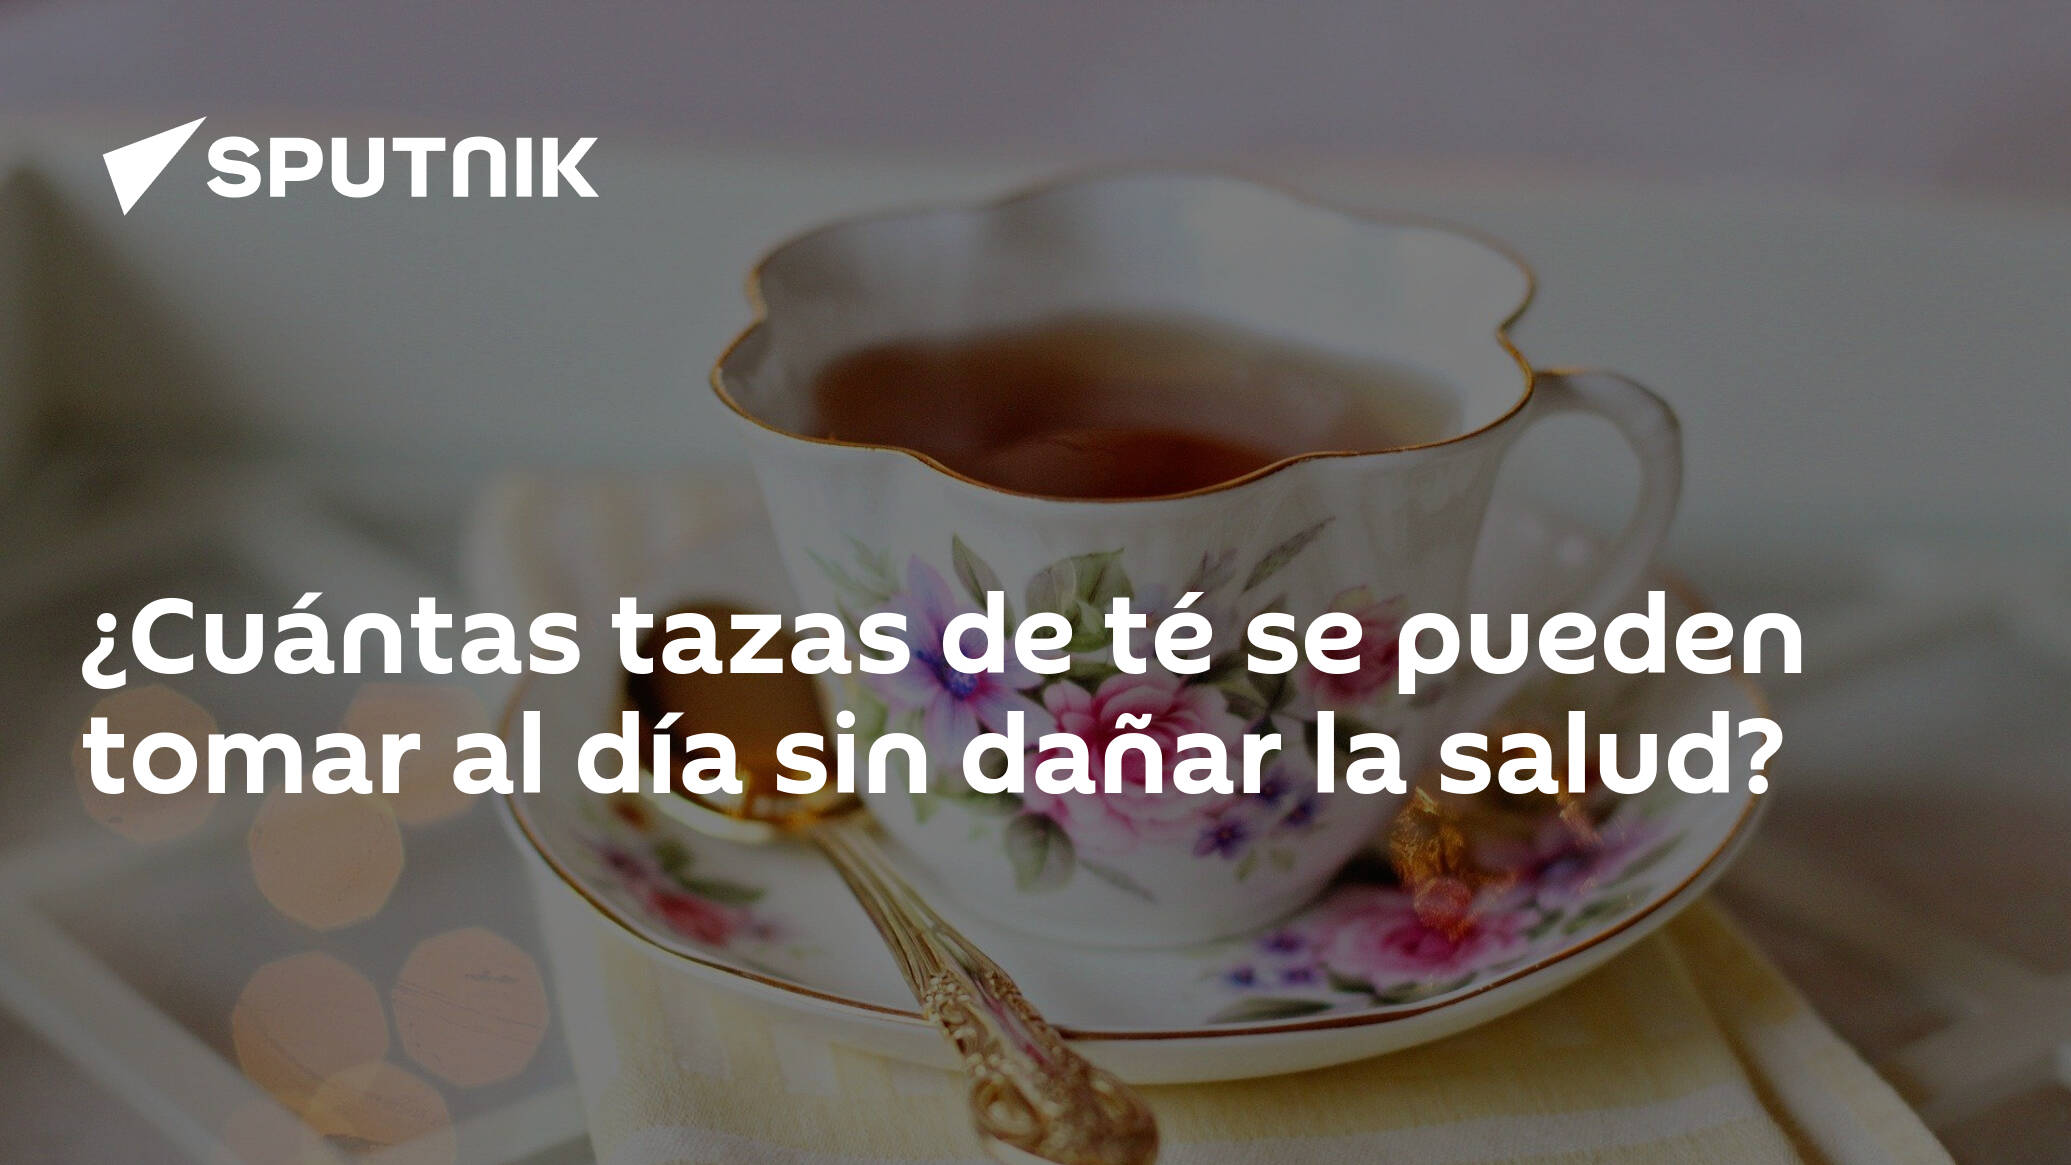 Cuántas tazas de té se pueden tomar al día sin dañar la salud? -  30.09.2020, Sputnik Mundo